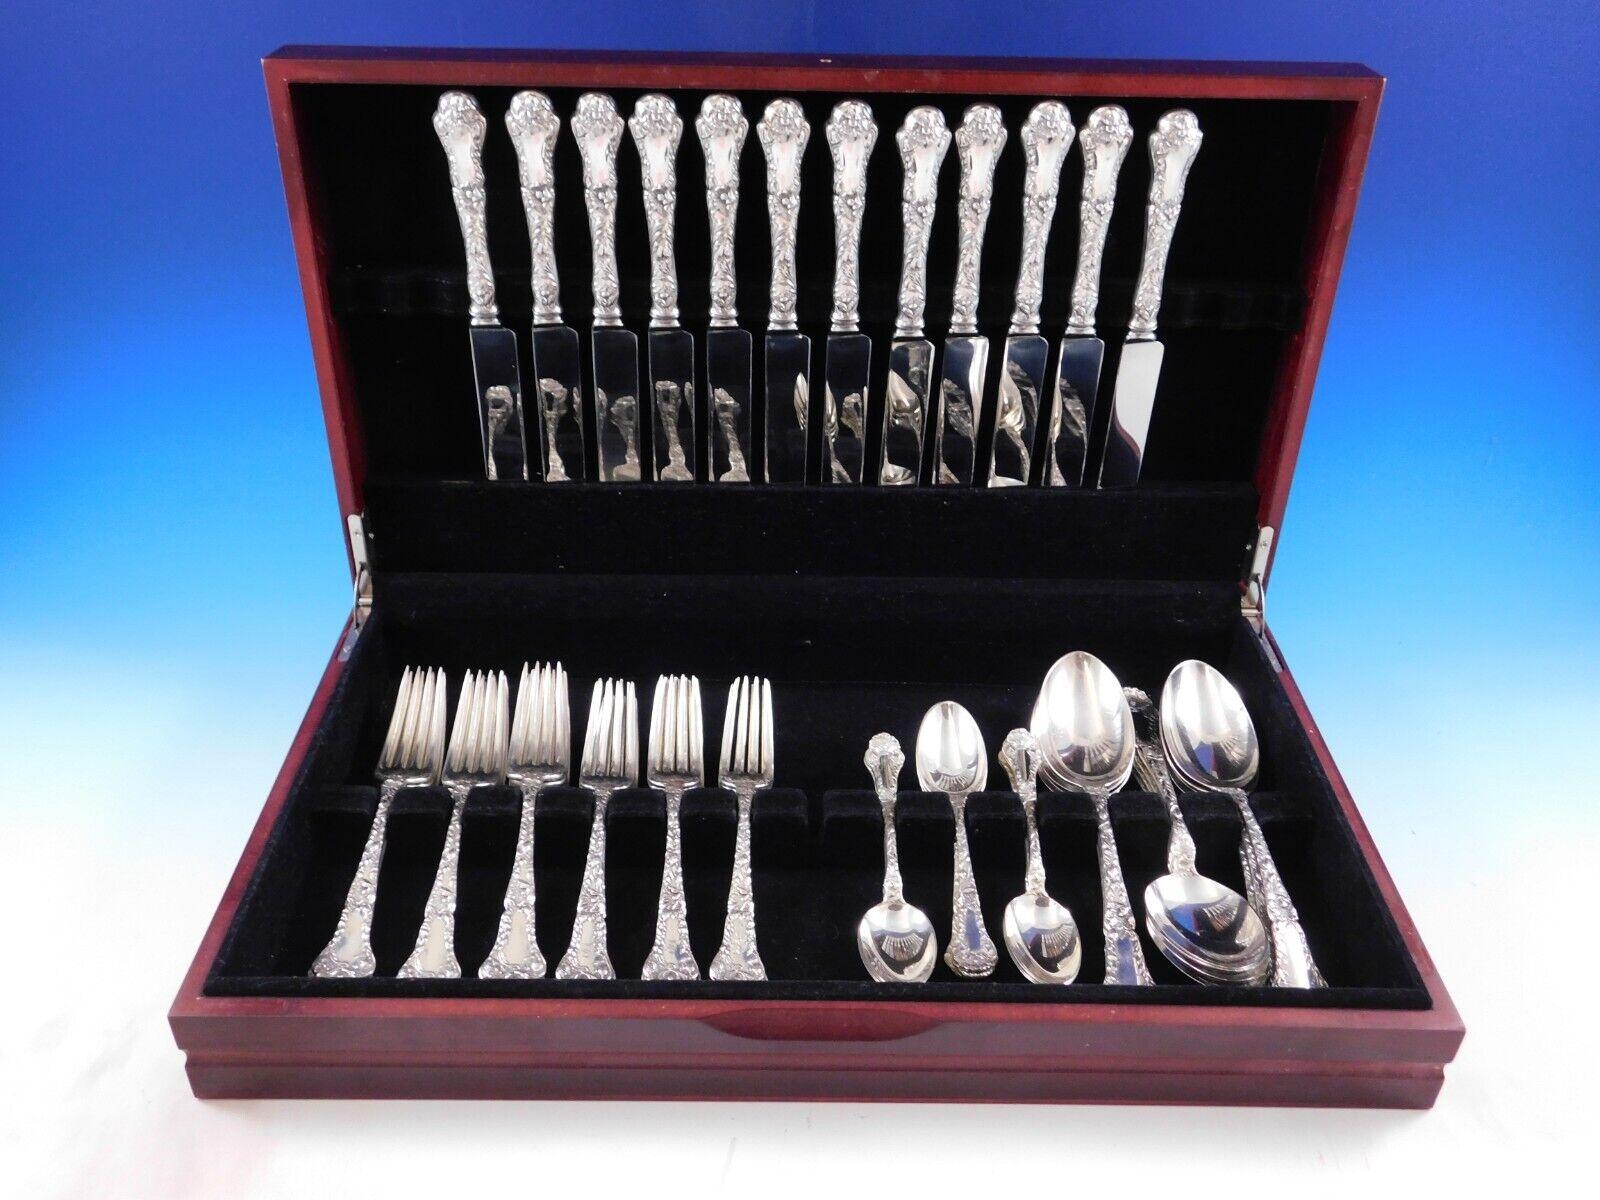 Exquisites Dinner Size Poppy by Gorham Sterling Silber Besteck - 60 Teile. Dieses Set enthält:
12 Messer in Tafelgröße, 9 5/8